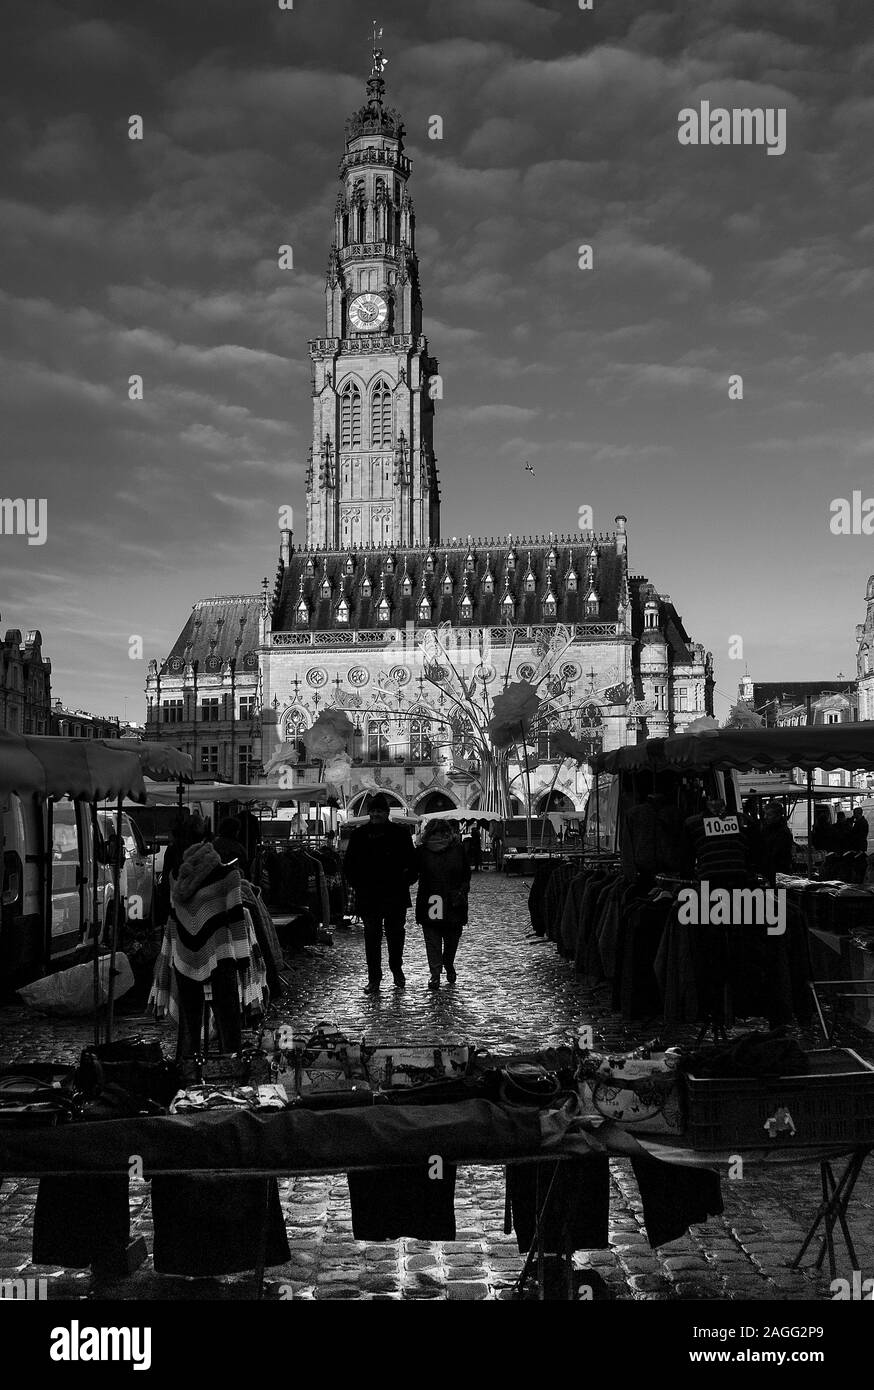 Tour de ville et du marché, Petite place place des héros, Arras, dans le Nord de la France Banque D'Images